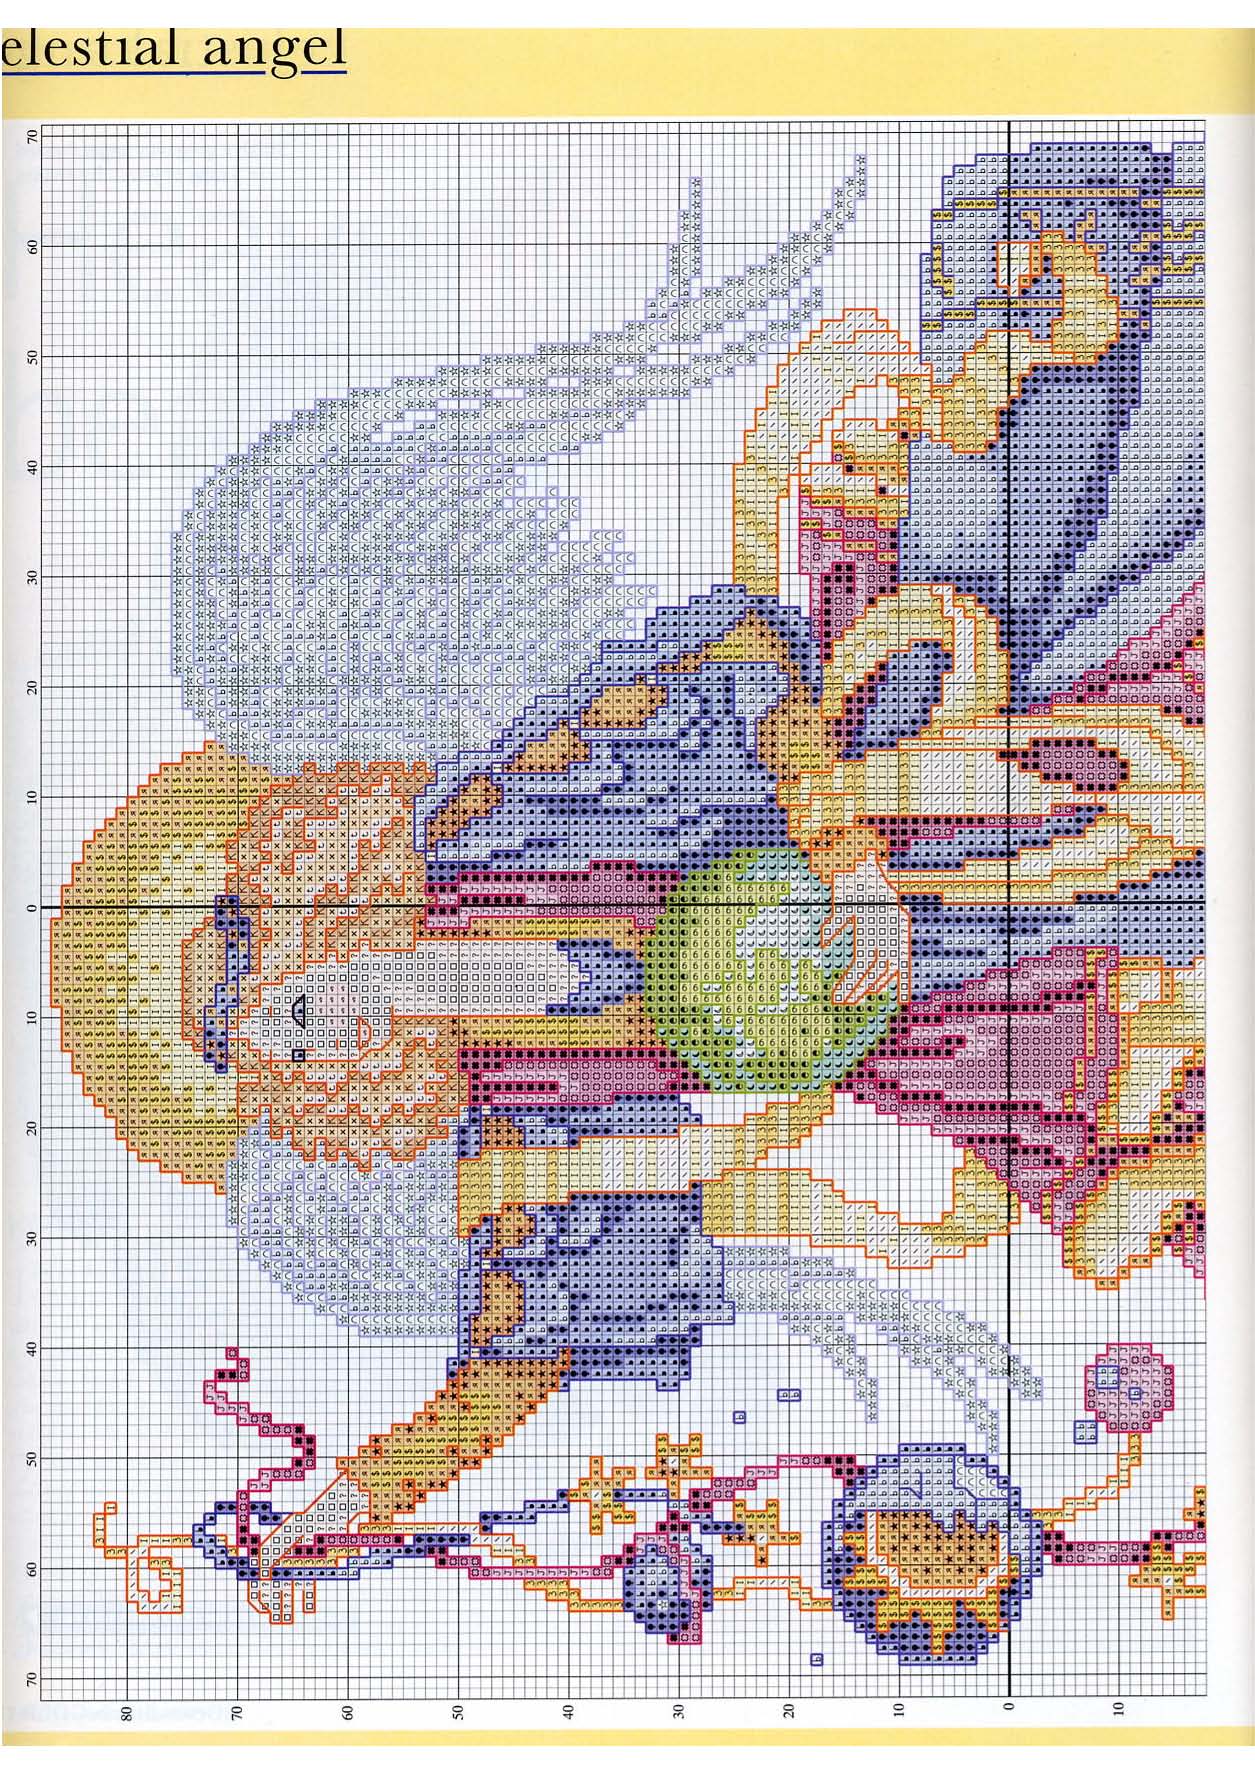 heavenly angel cross stitch pattern (2)